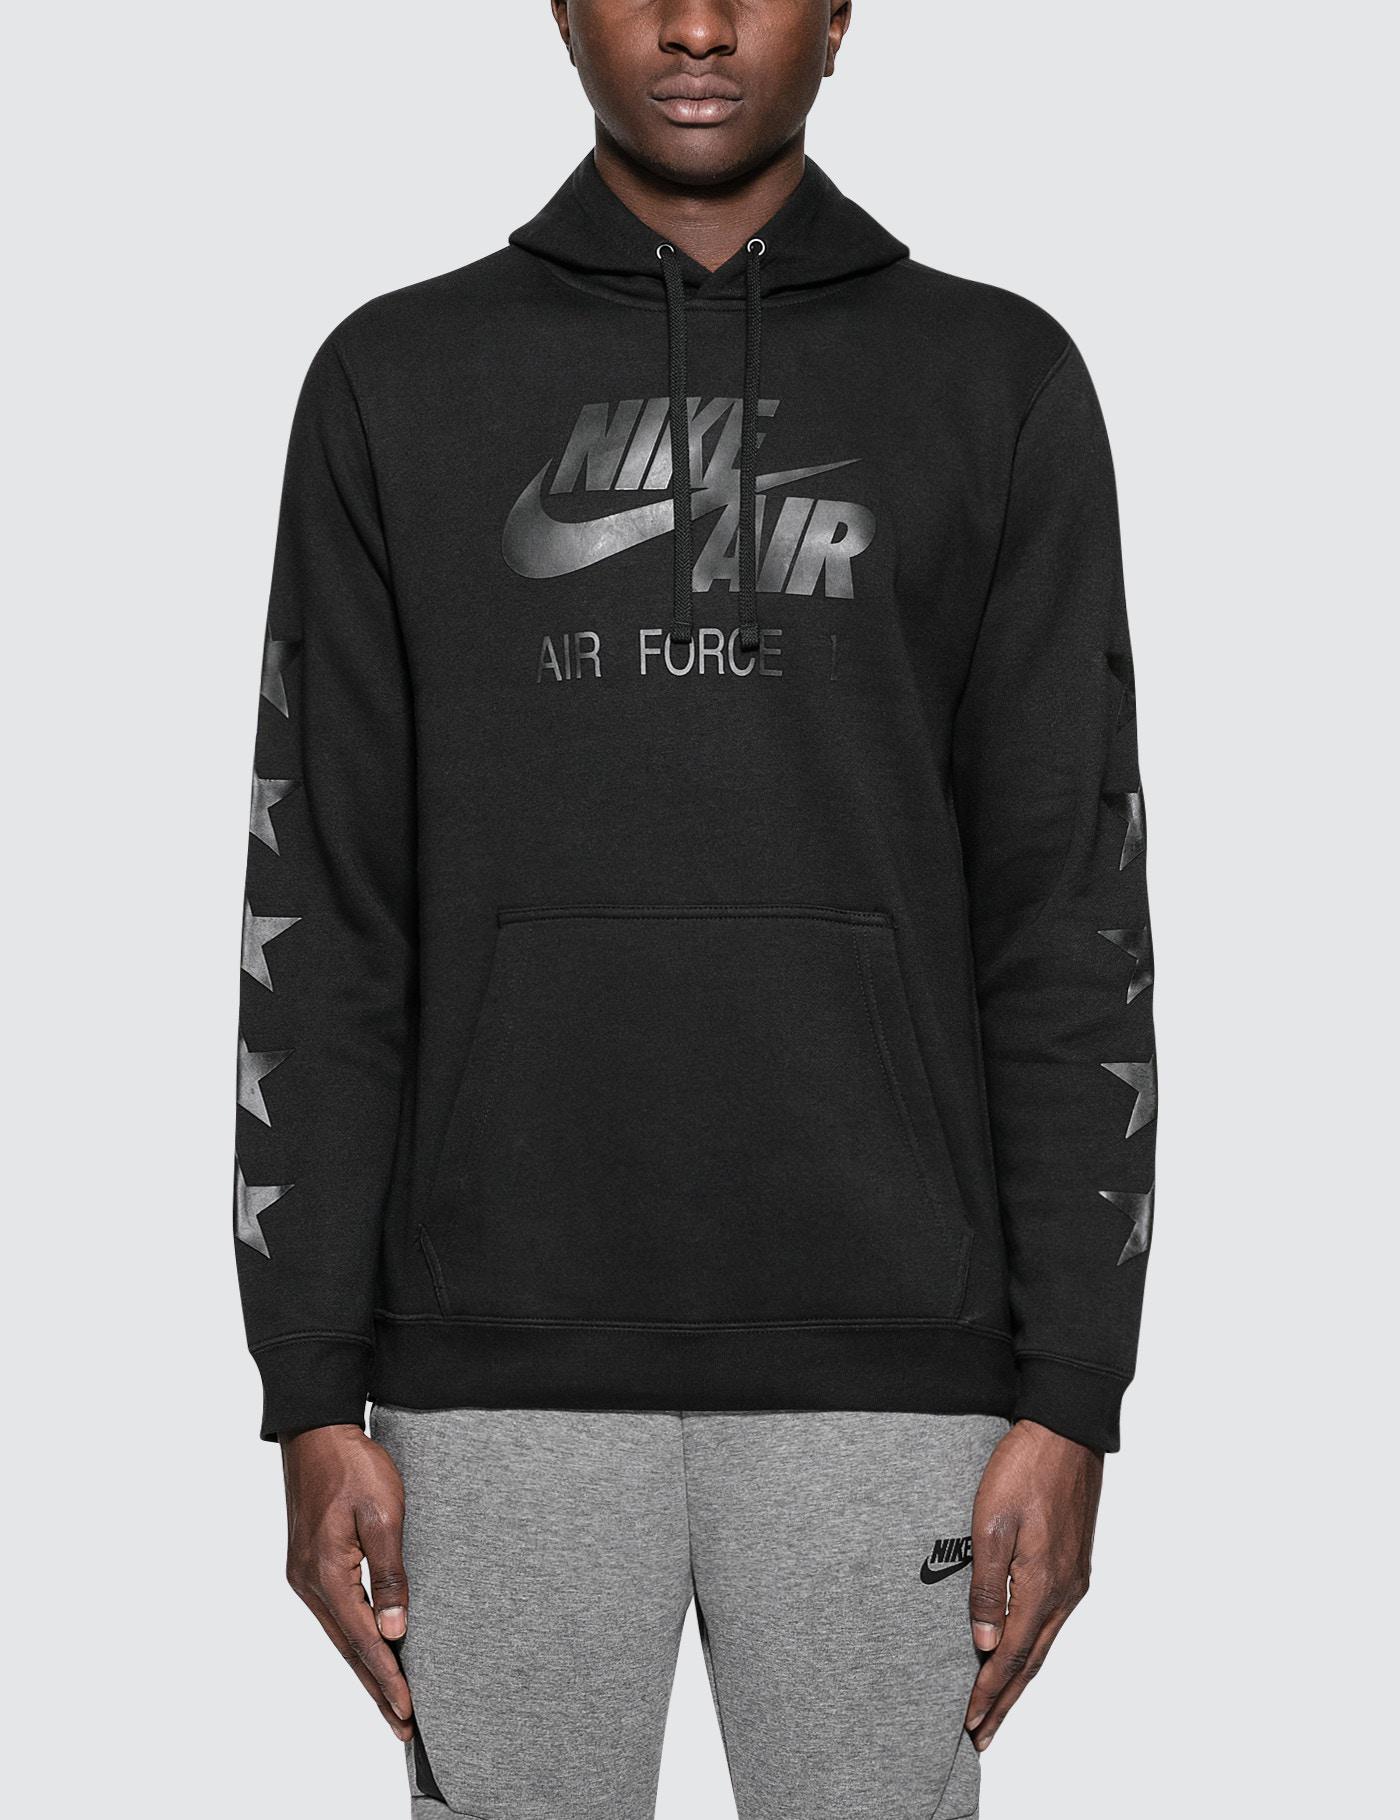 Lyst - Nike Nsw Club Fleece Af1 Hoodie in Black for Men